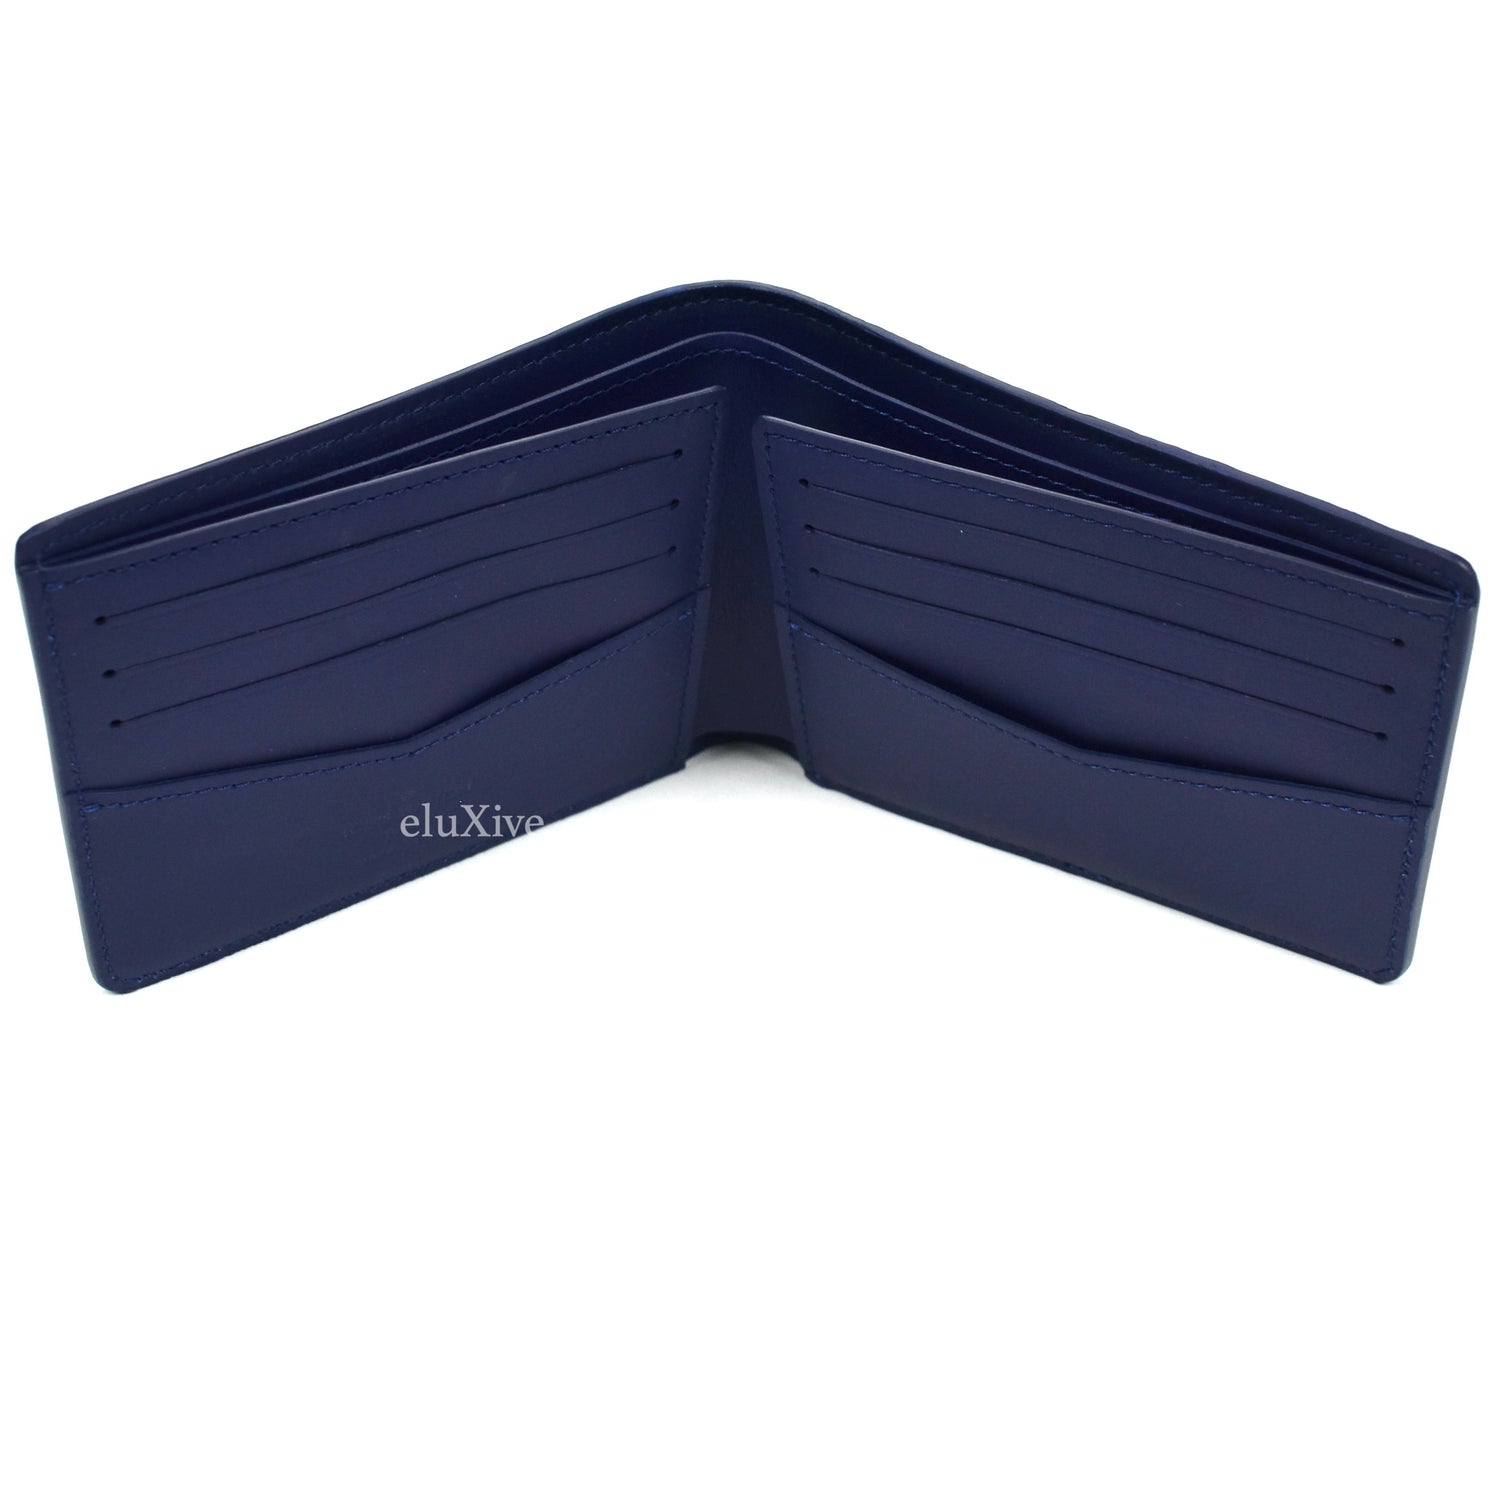 slender wallet blue